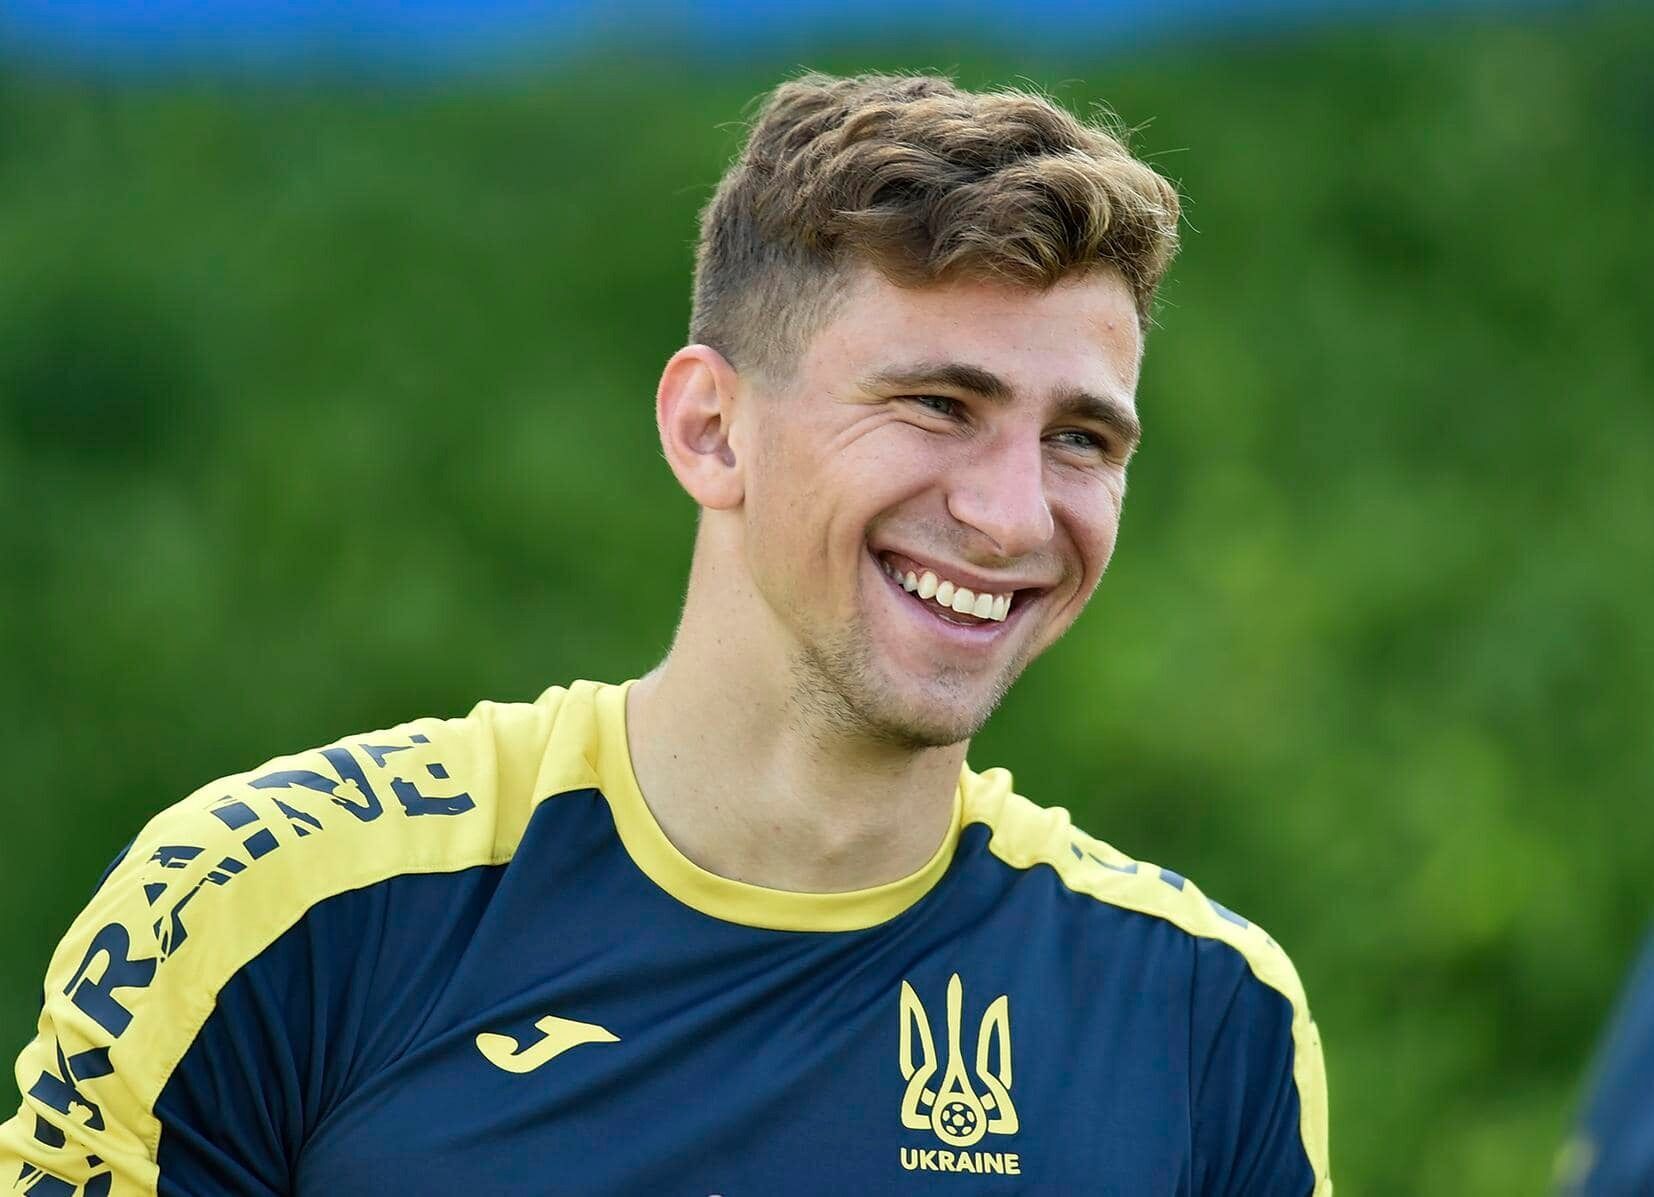 Круче звезды "Реала": защитник сборной Украины возглавил престижный рейтинг